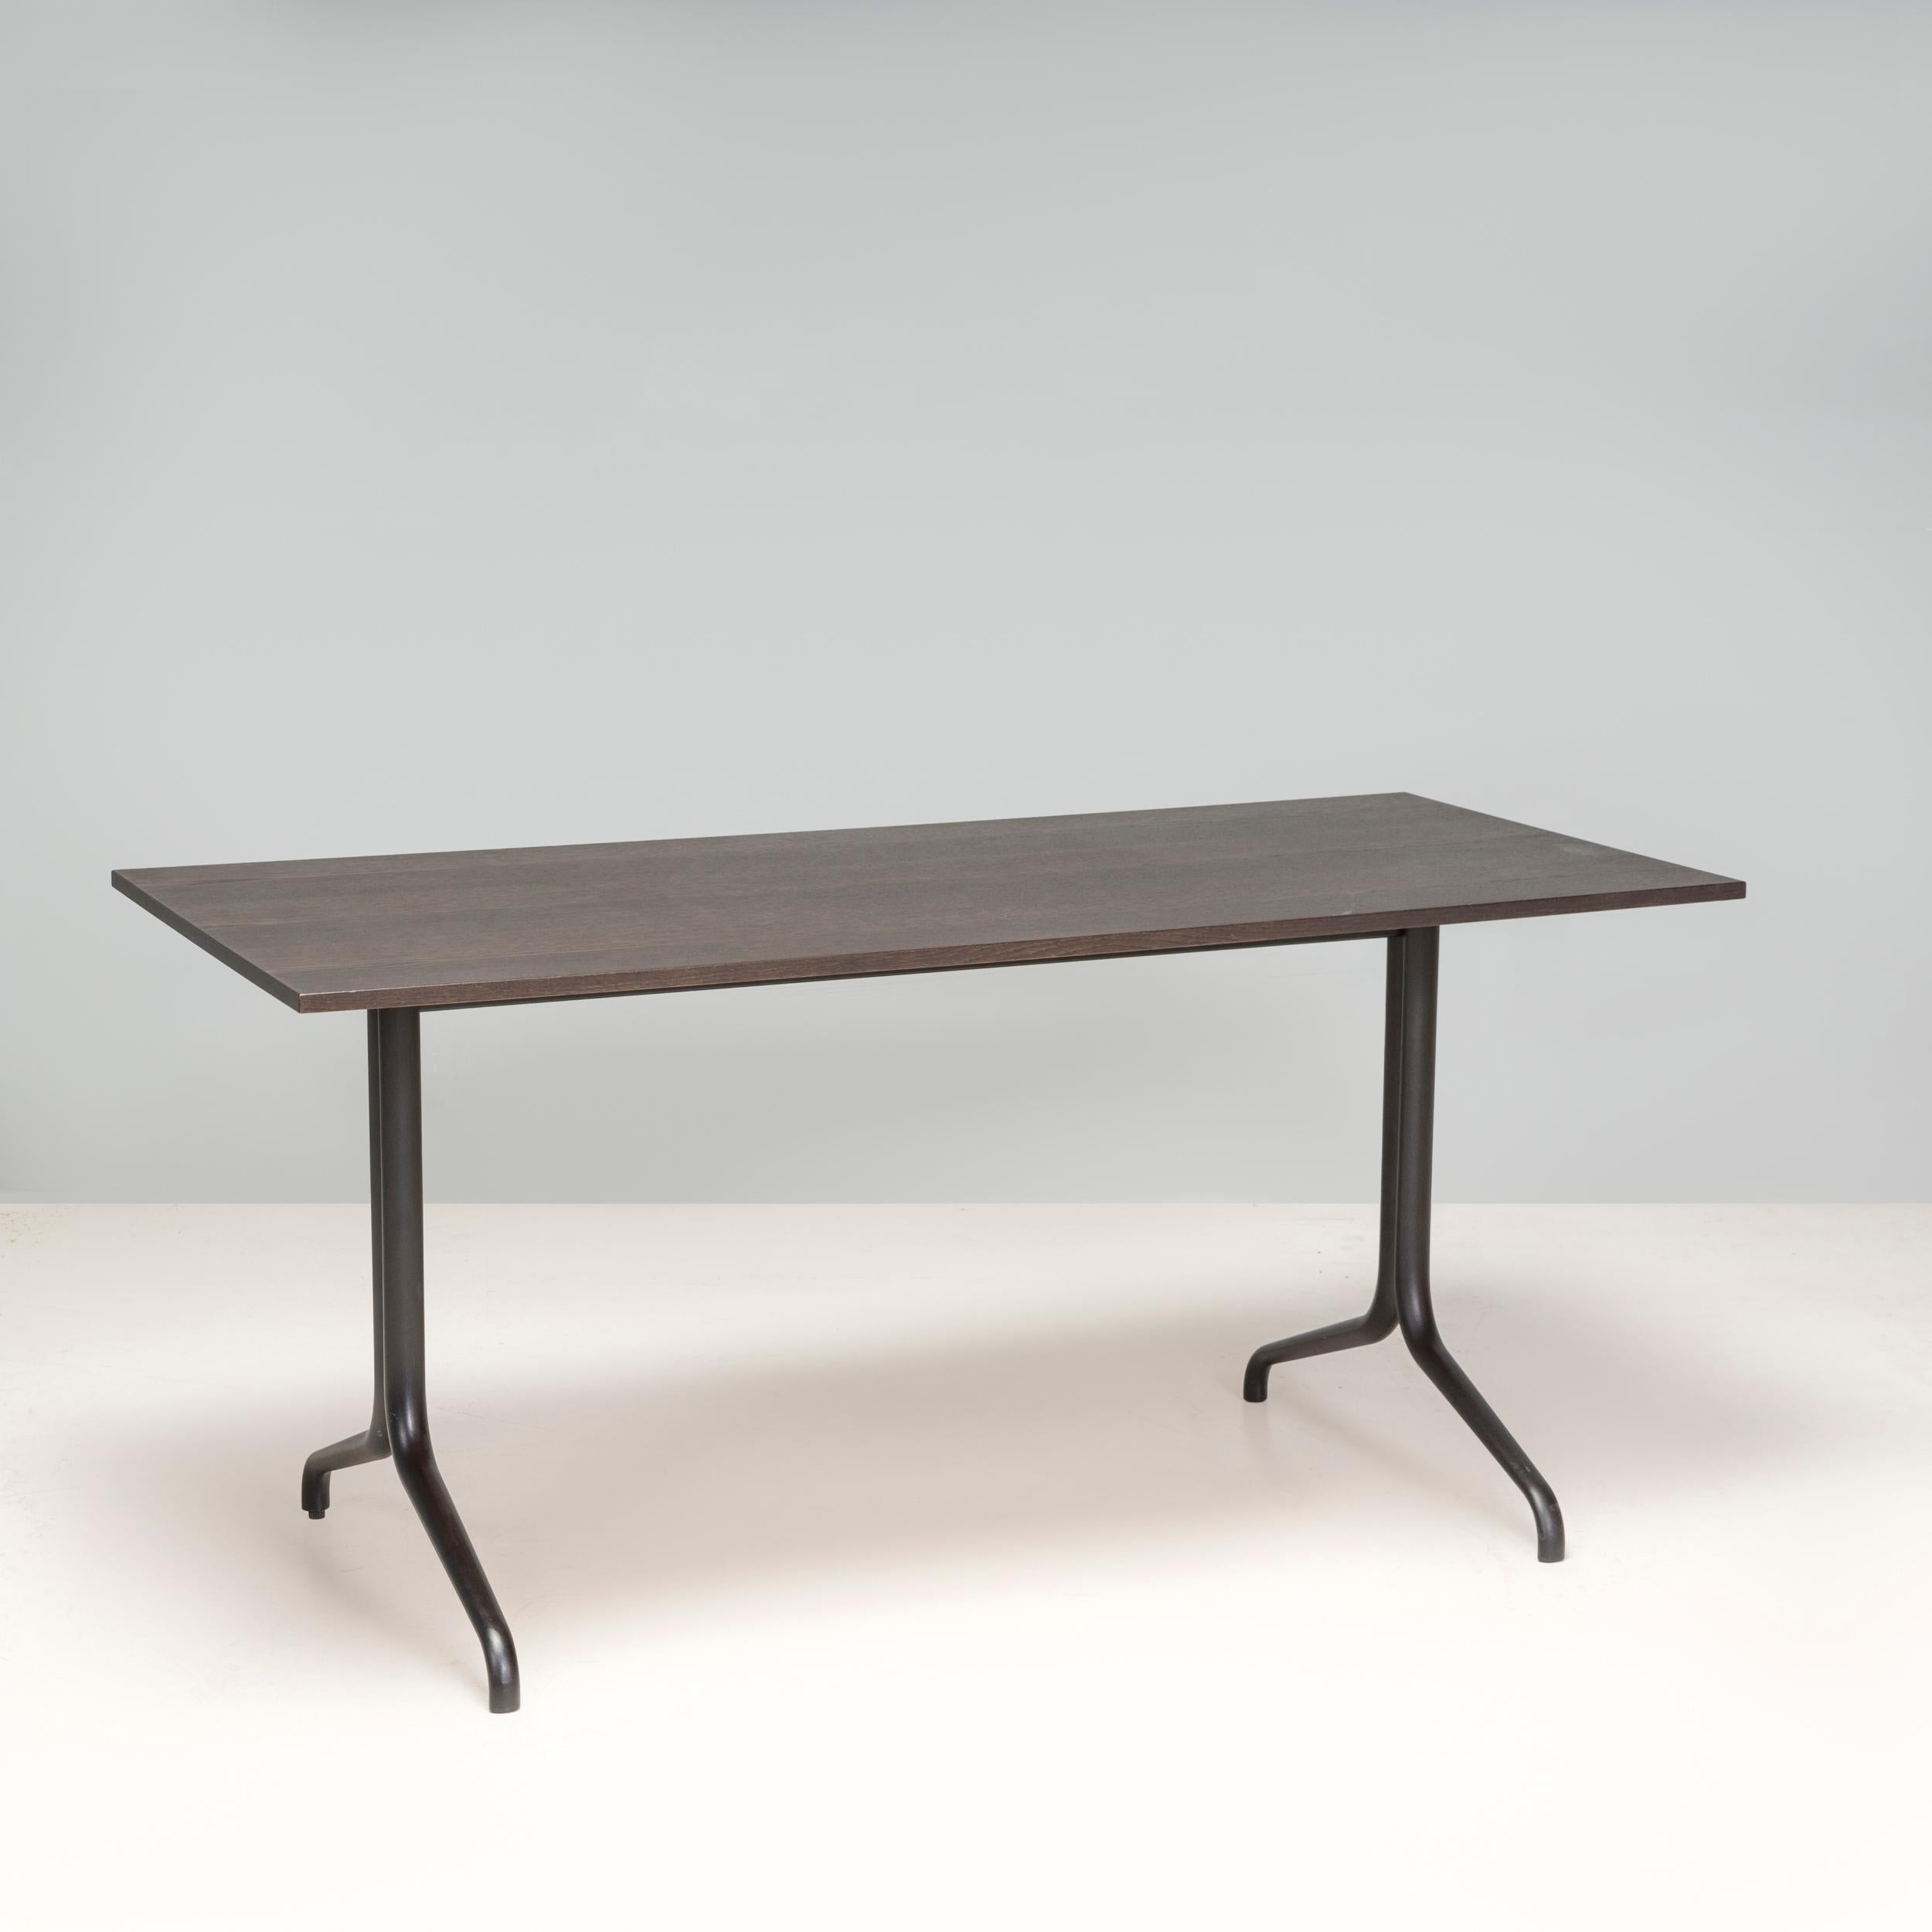 Der Belleville Esstisch wurde ursprünglich 2015 von Ronan & Erwan Bouroullec für Vitra entworfen und verleiht dem klassischen Bistrotisch ein modernes Update. 

Der Tisch hat eine rechteckige Tischplatte aus dunklem Eichenfurnier und steht auf